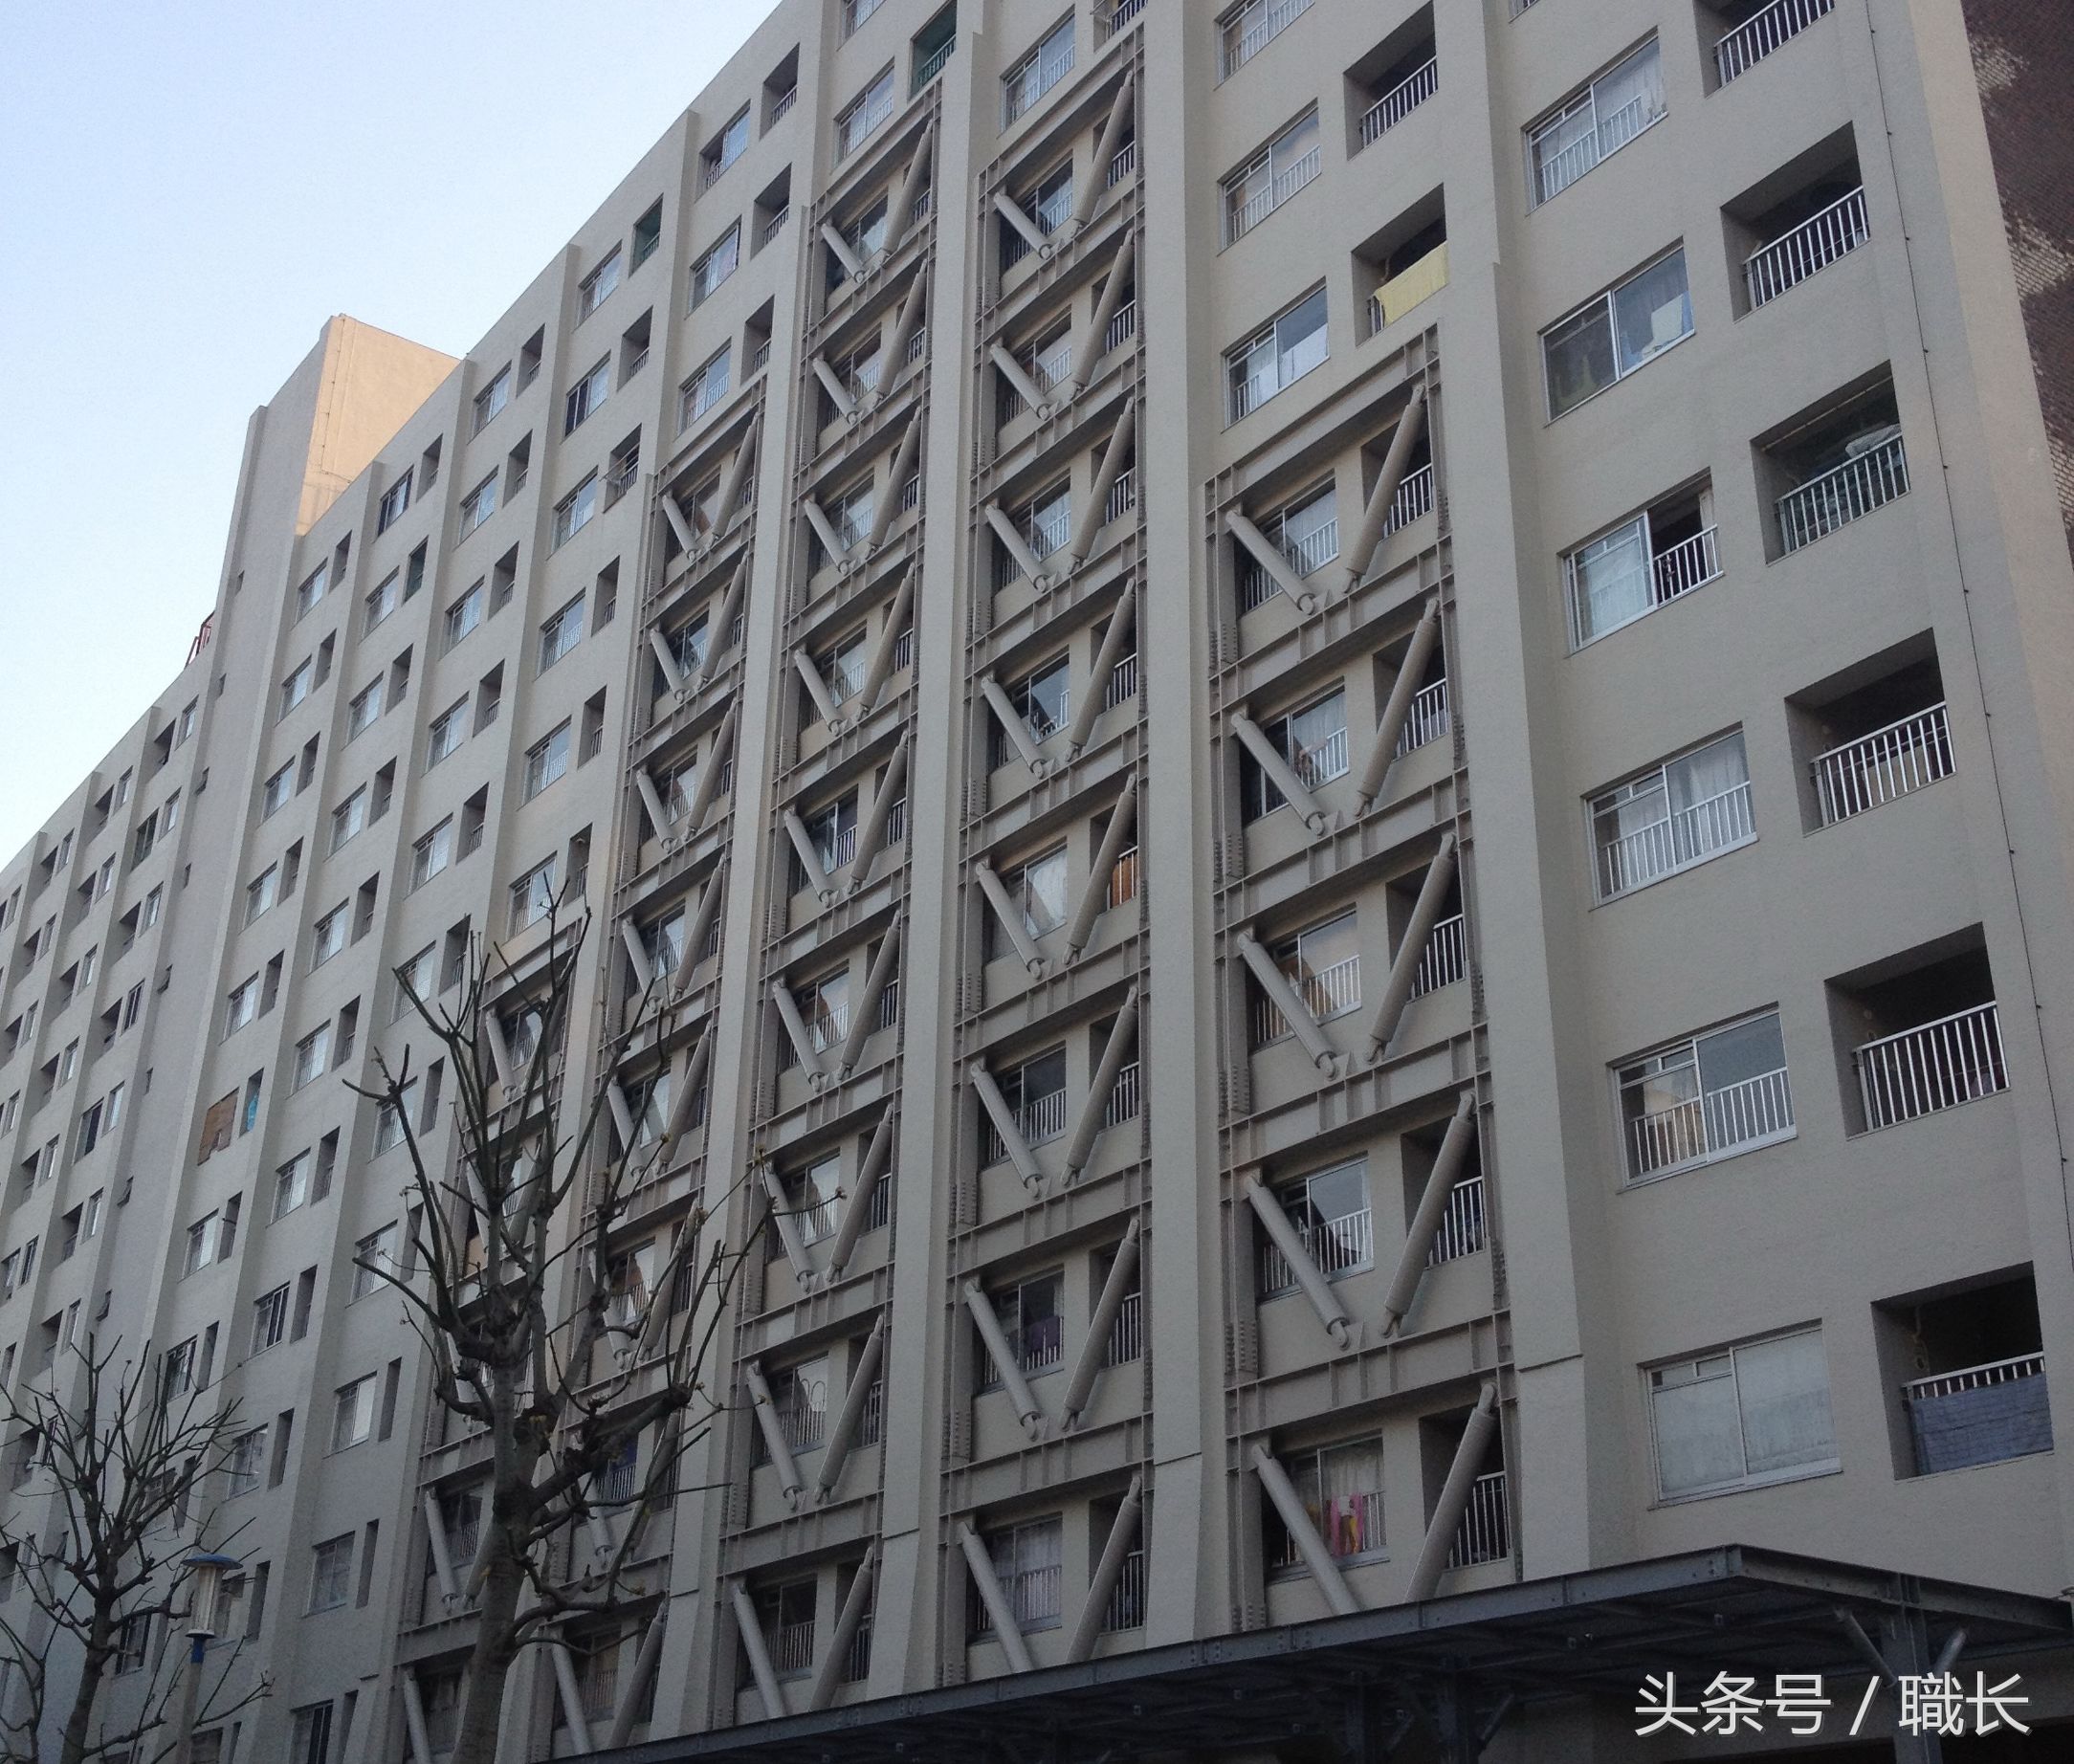 日本对建筑物的耐震加固工程可没少花政府银子